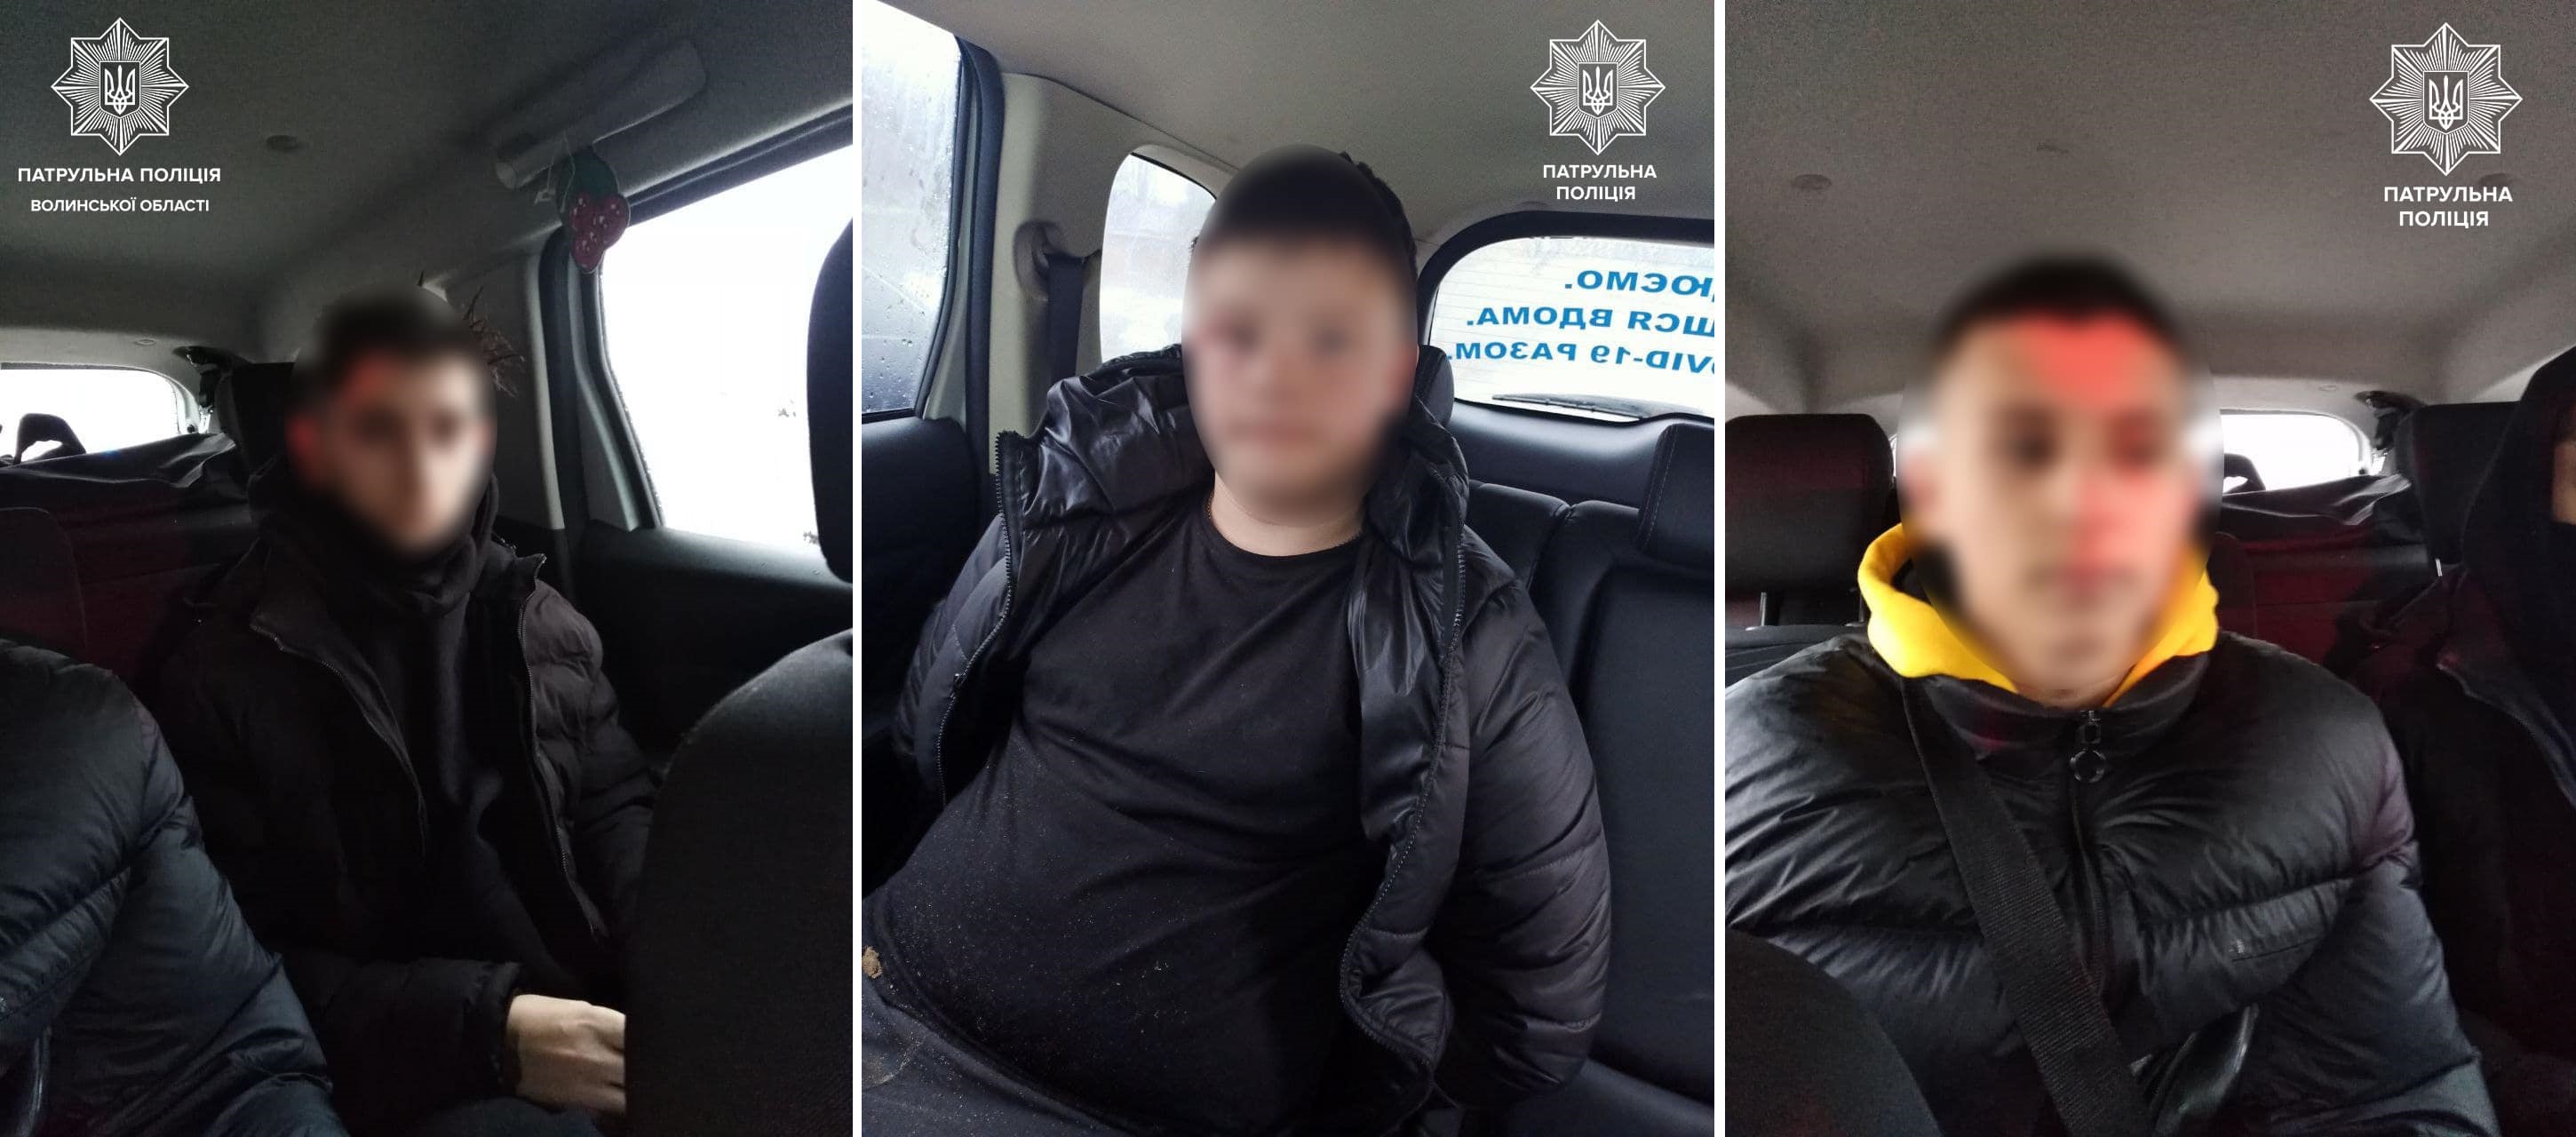 Наезд на пешеходов в Луцке: 16-летний водитель транслировал побег от полиции в соцсетях